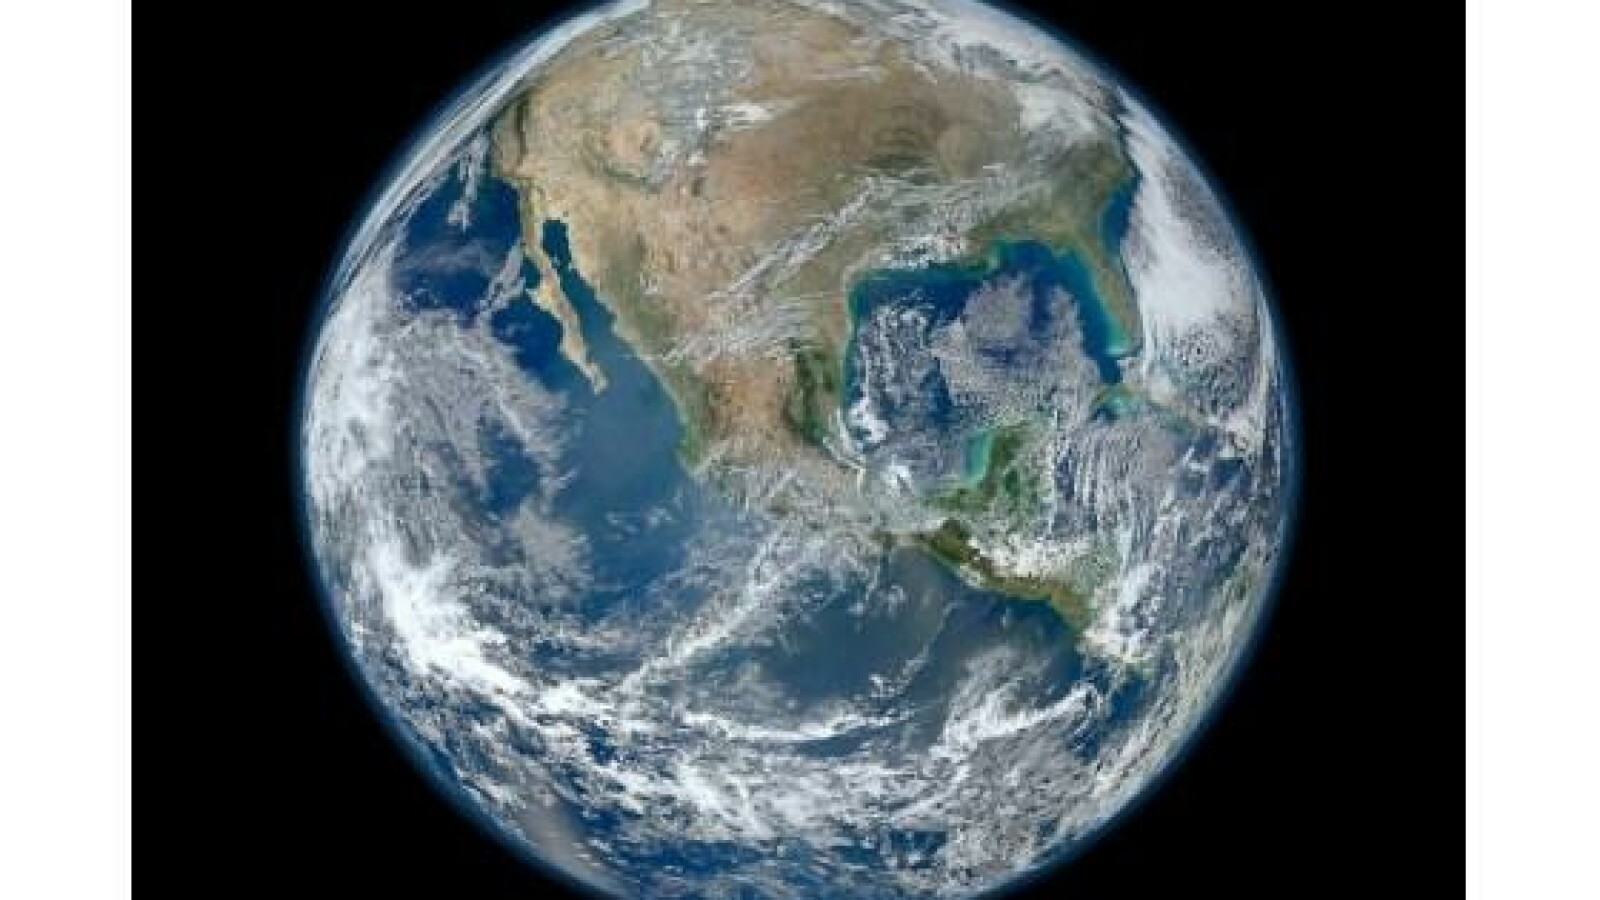 Hochauflösend: Die Erde vom Weltraum aus gesehen - NETZWELT1600 x 900